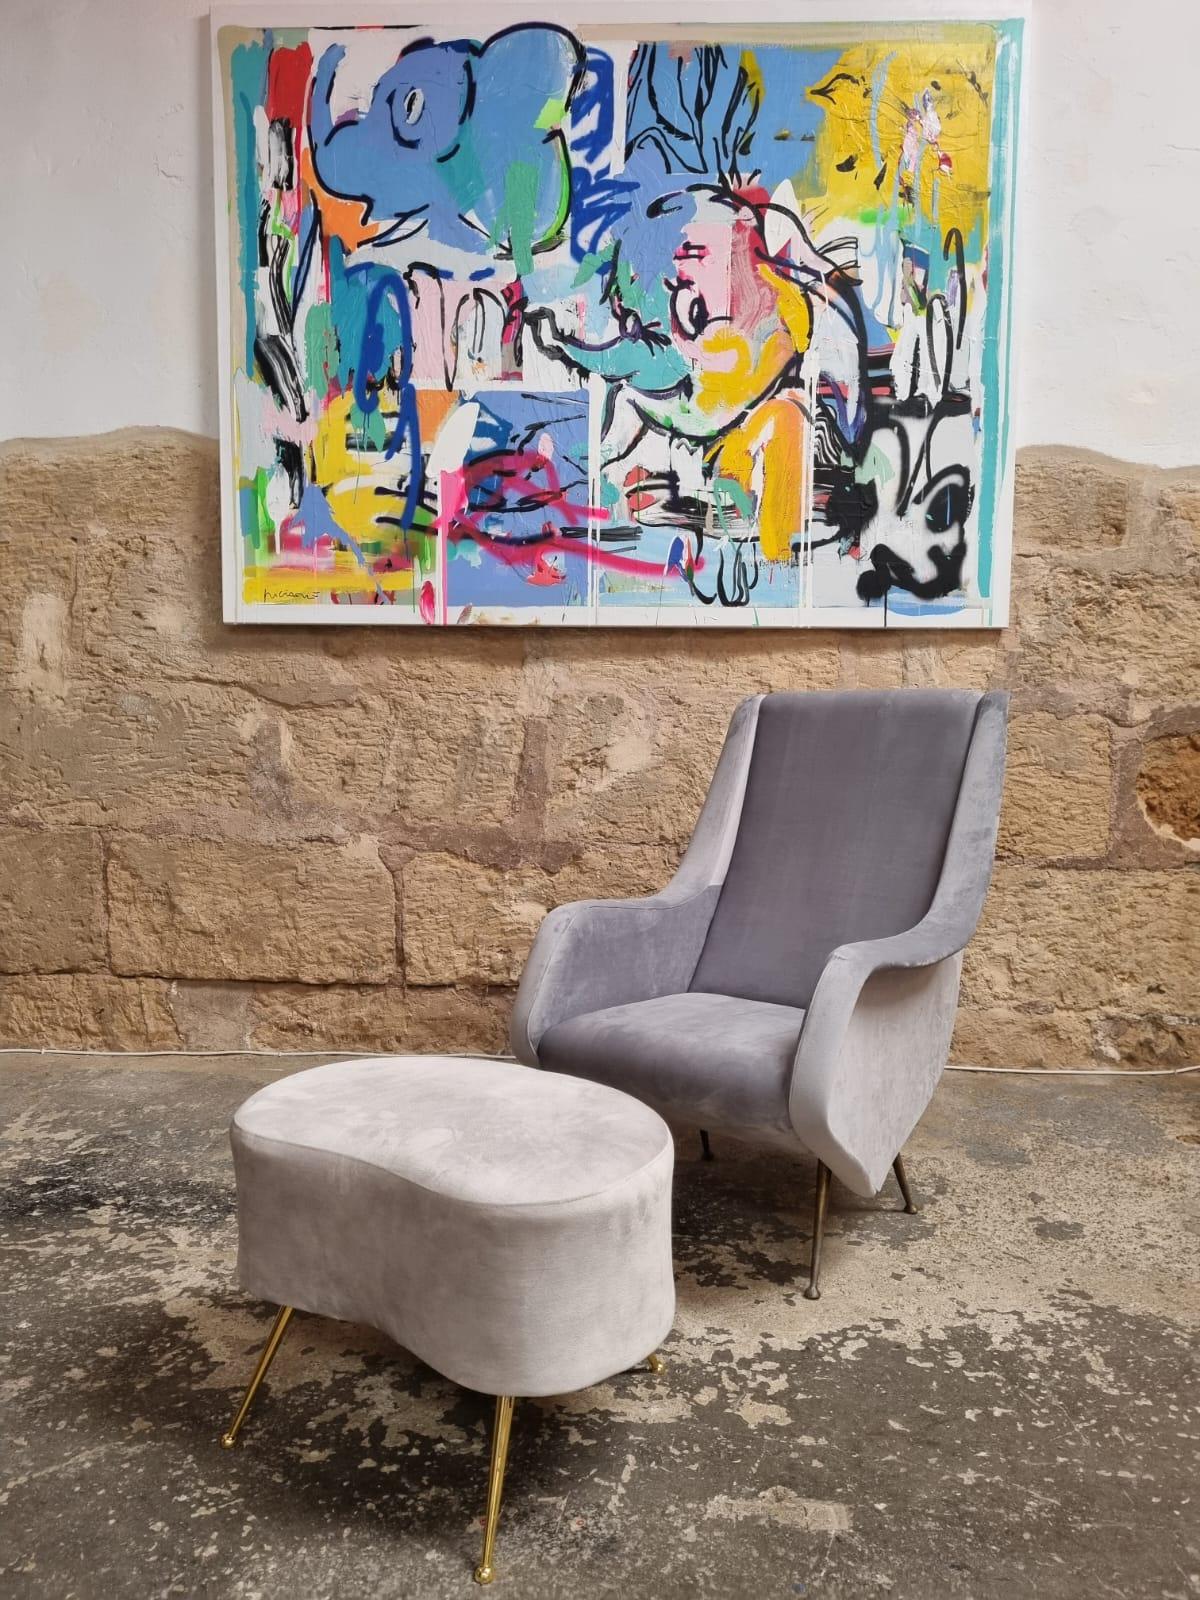 Außergewöhnliches Set aus zwei italienischen Sesseln + Ottomane des Designers Aldo Morbelli, herausgegeben von Isa Bergamo in den 1950er Jahren. 

Dieses Sesselpaar ist Teil der italienischen Tradition von hochwertigen und sehr eleganten Sesseln.